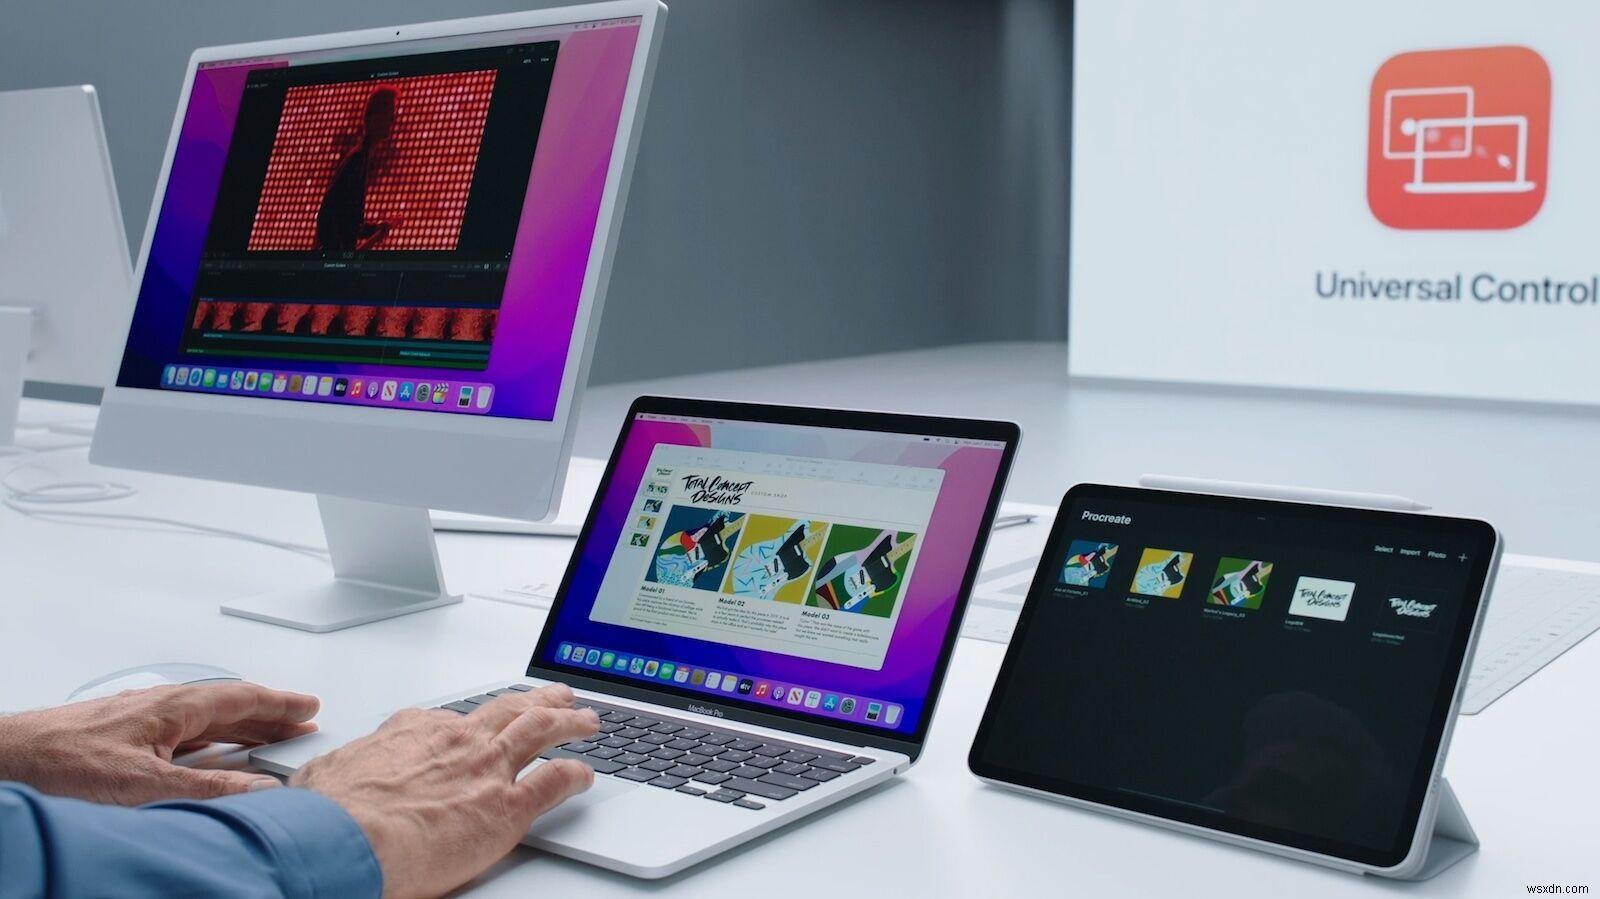 Mac और iPads के बीच माउस और कीबोर्ड कैसे साझा करें 